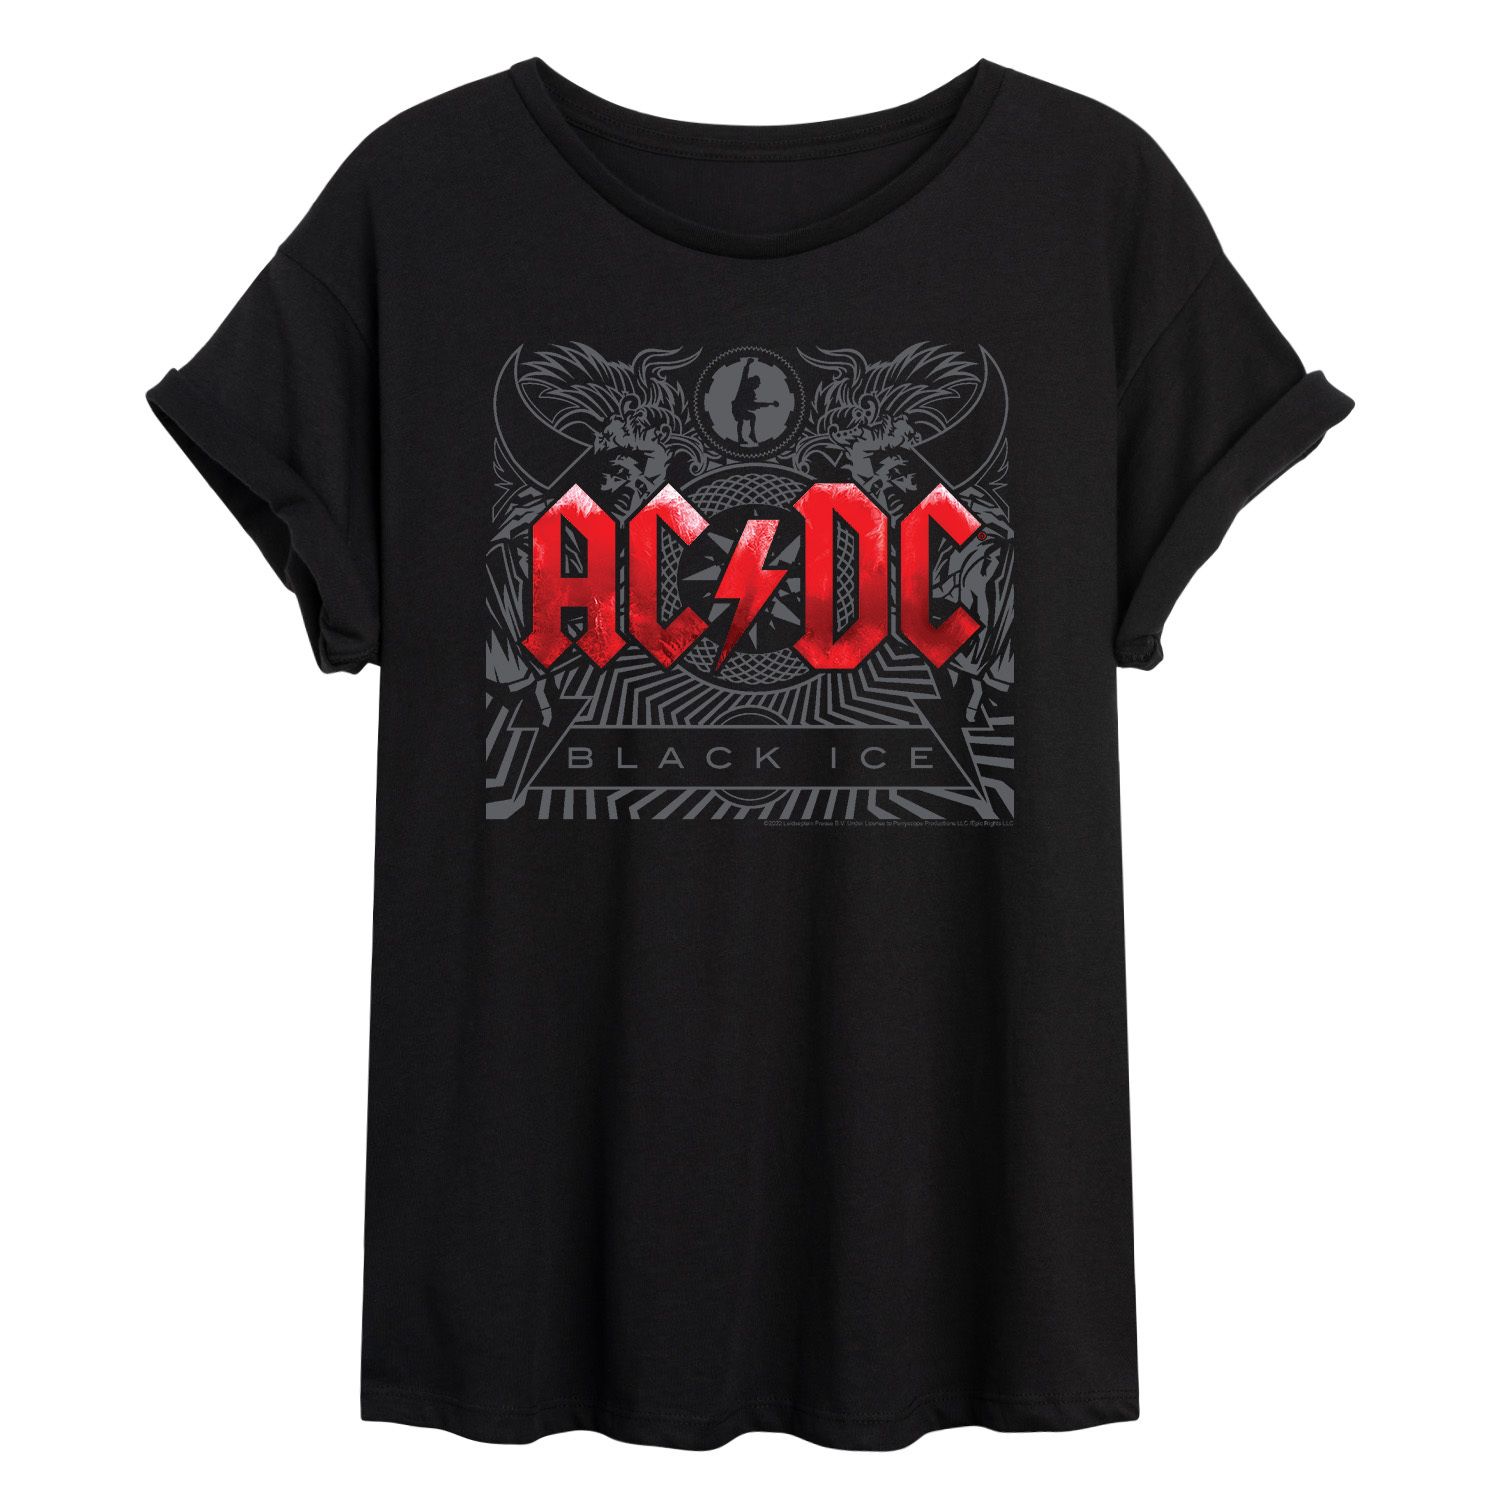 Детская футболка AC/DC Black Ice с струящимся рисунком Licensed Character футболка ac dc black ice